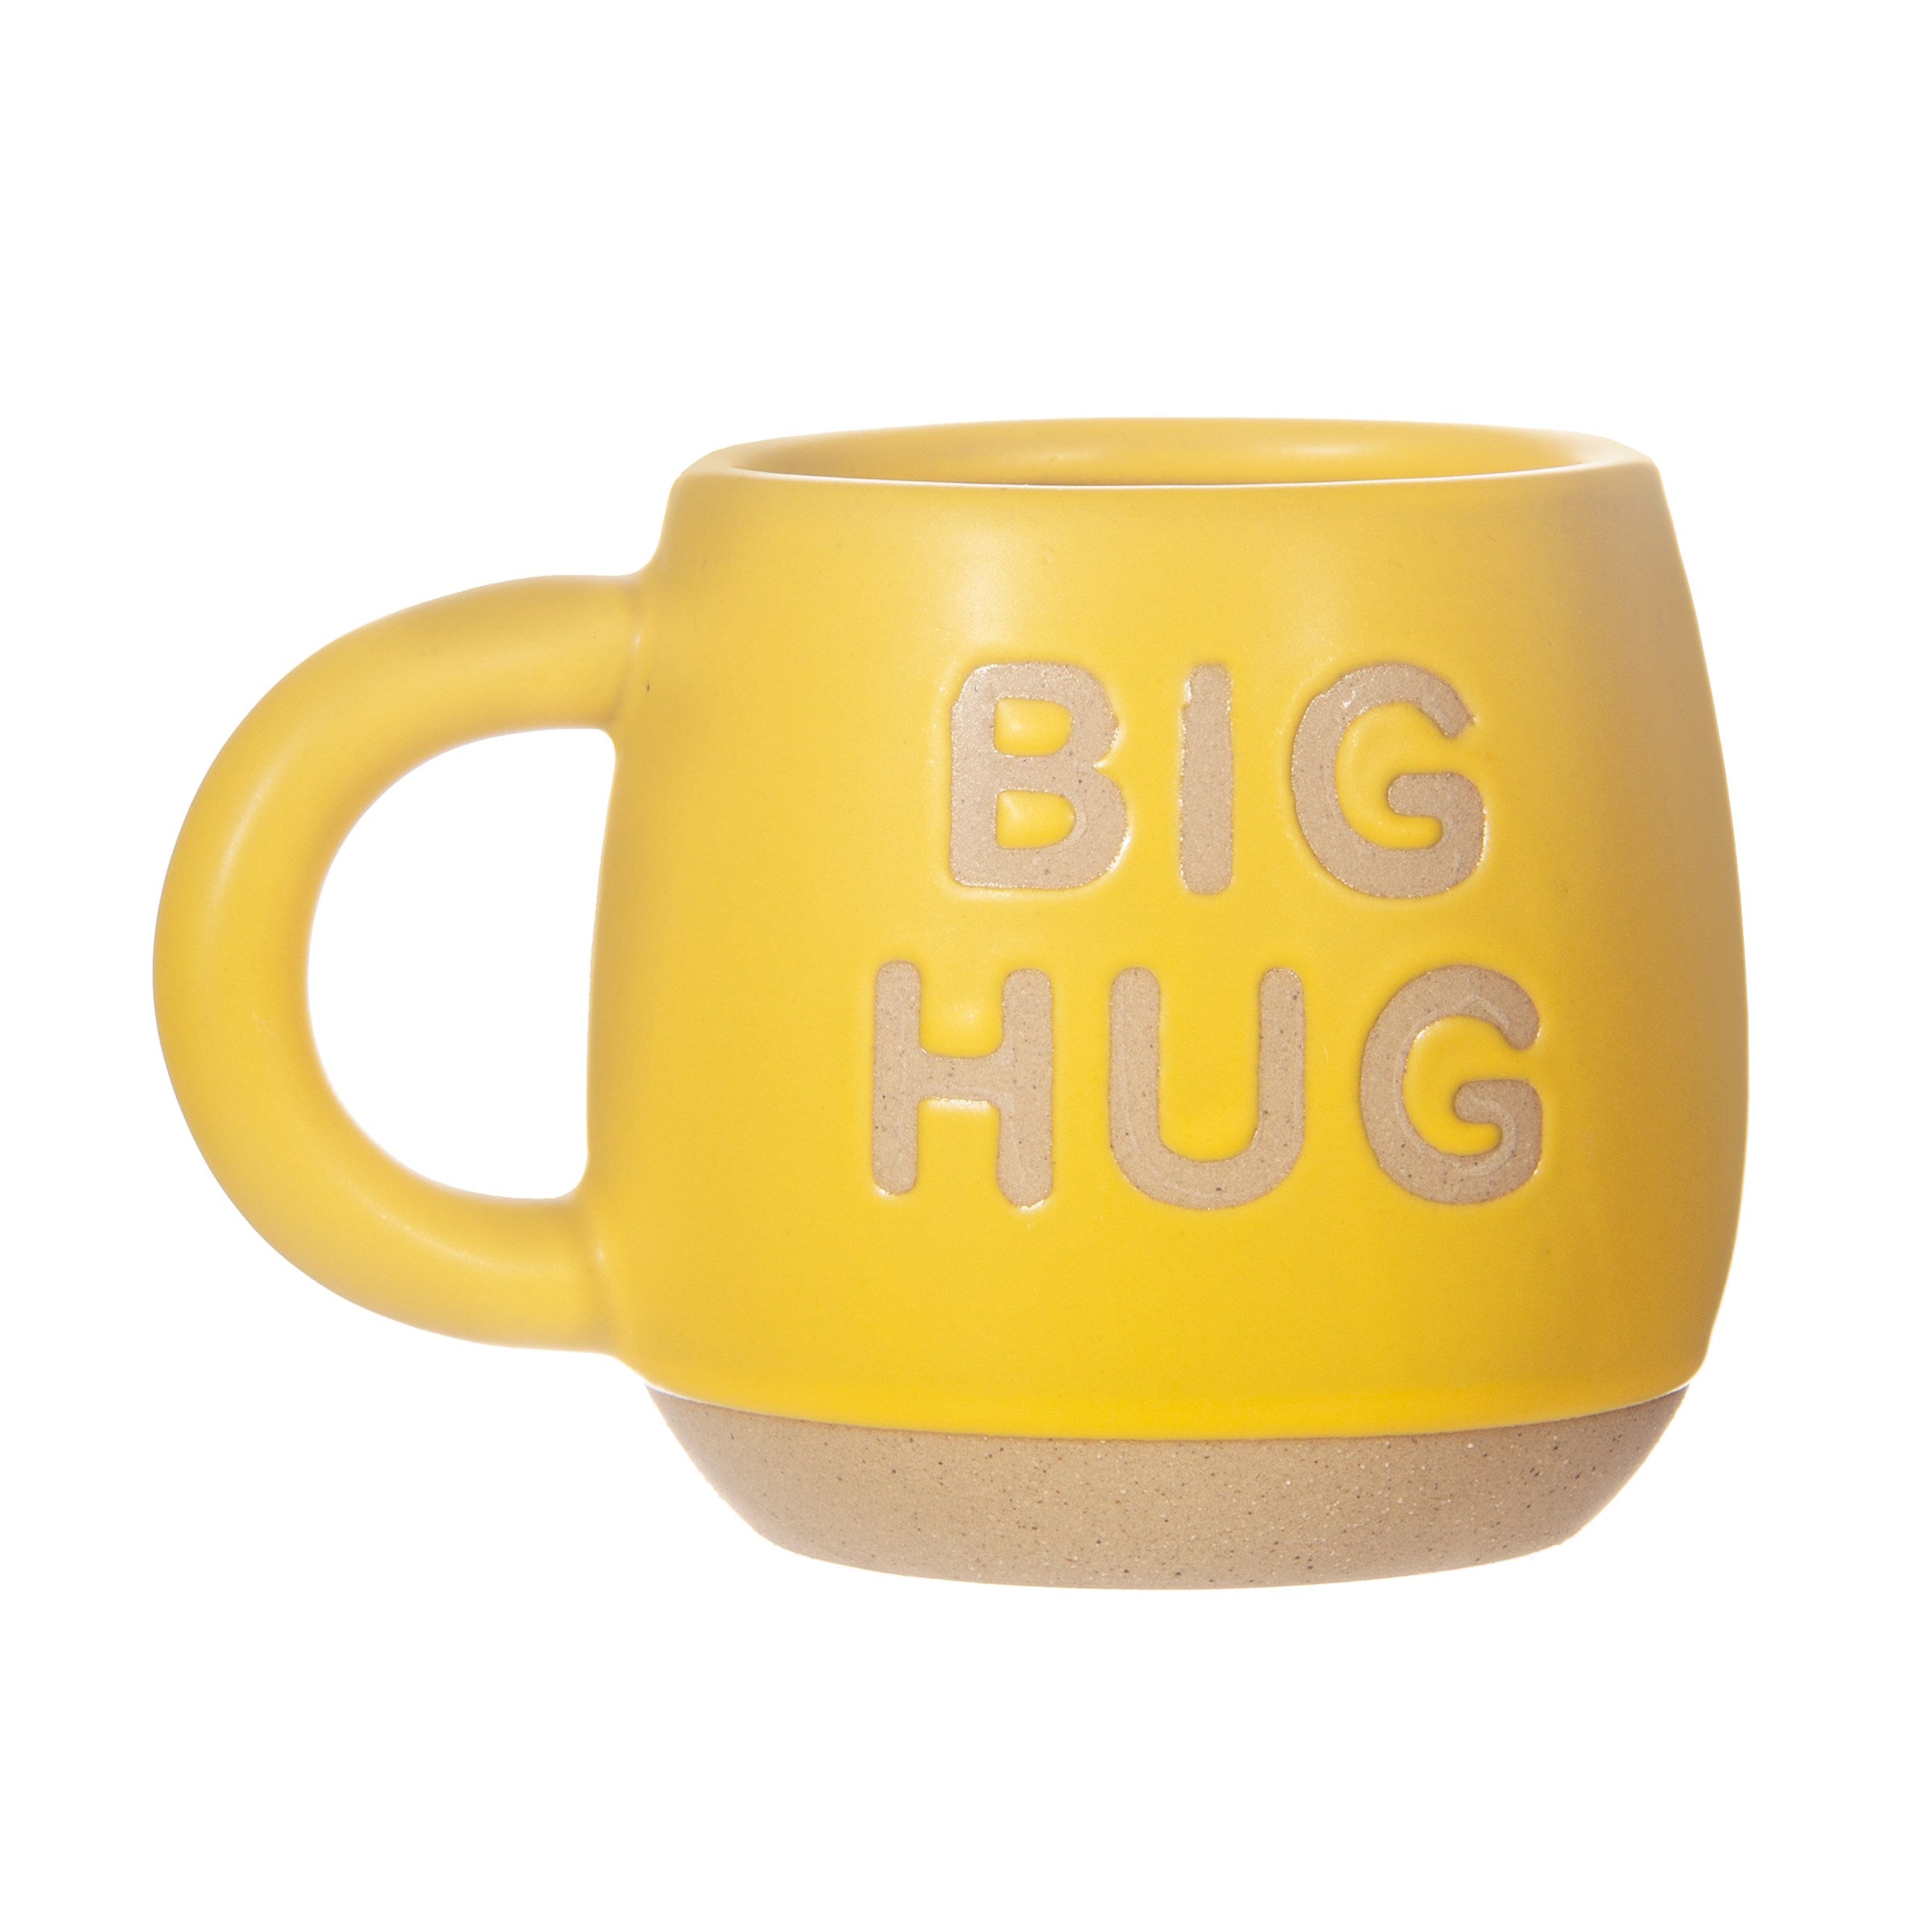 Big Hug Mug